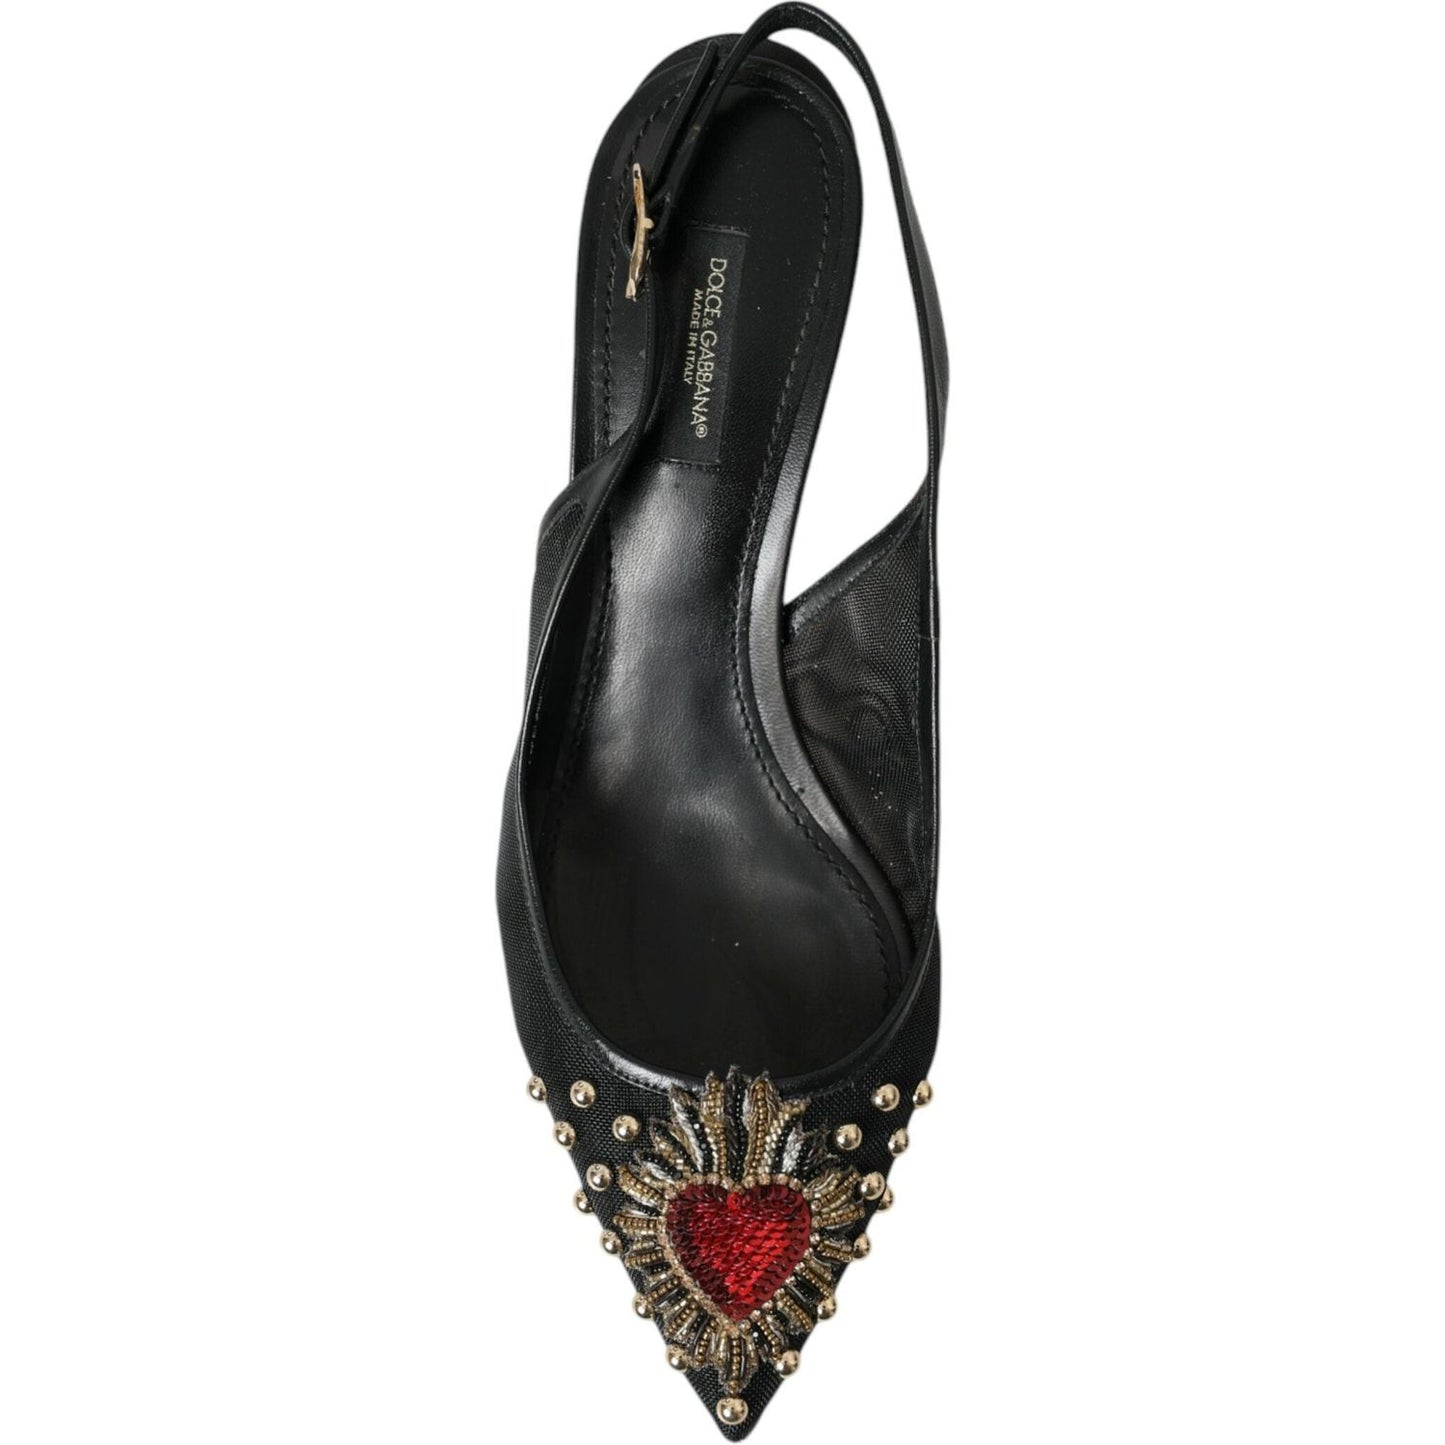 Dolce & Gabbana Black Mesh Embellished Heel Slingbacks Shoes black-mesh-embellished-heel-slingbacks-shoes-1